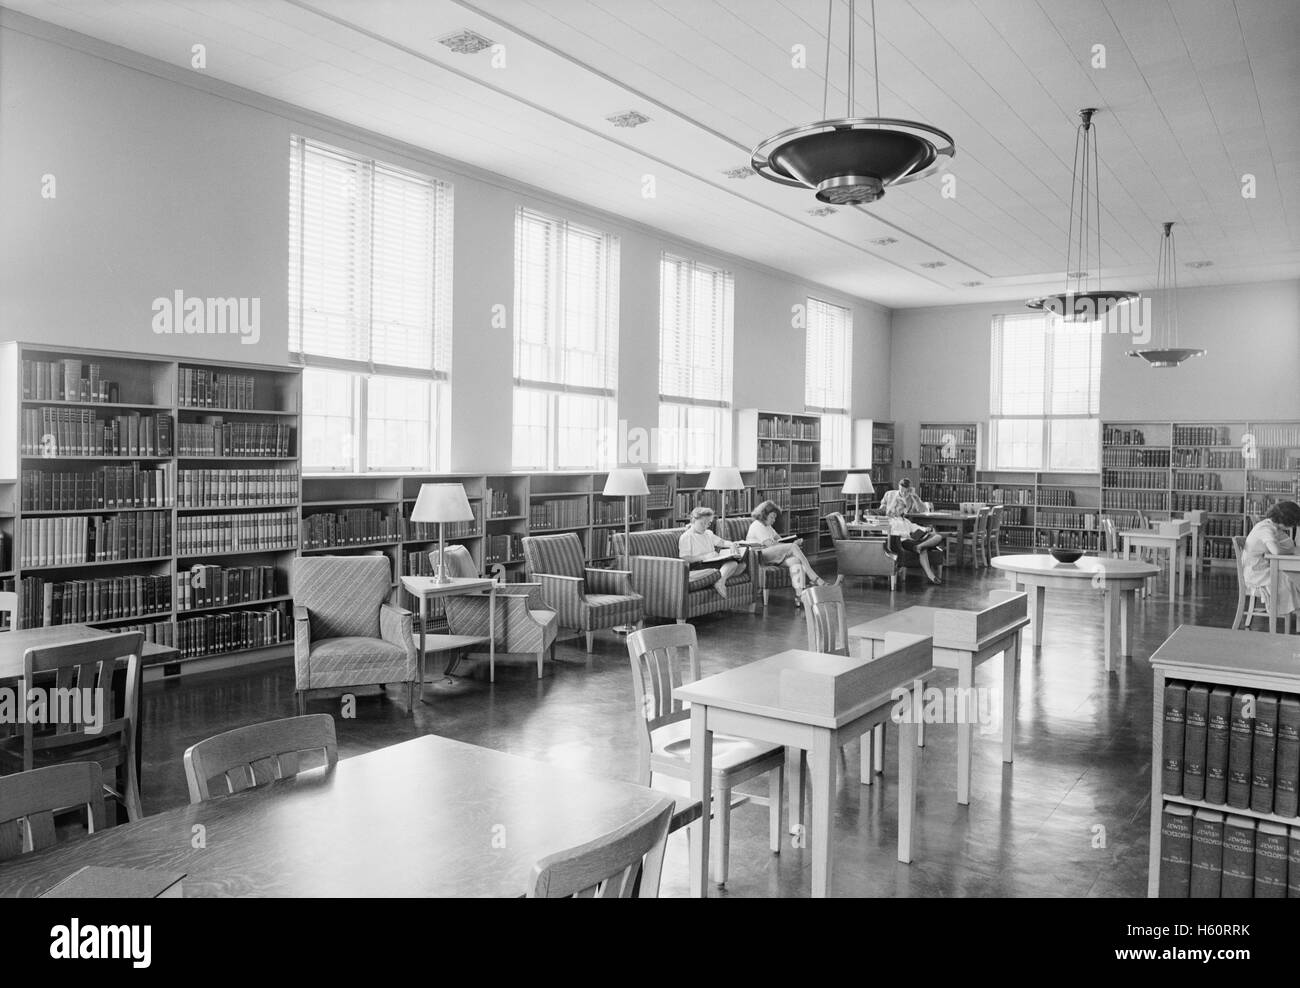 Salle de lecture, bibliothèque de Palmer, Connecticut College for Women, New London, Connecticut, USA, Gottscho-Schleisner Collection, Juin 1944 Banque D'Images